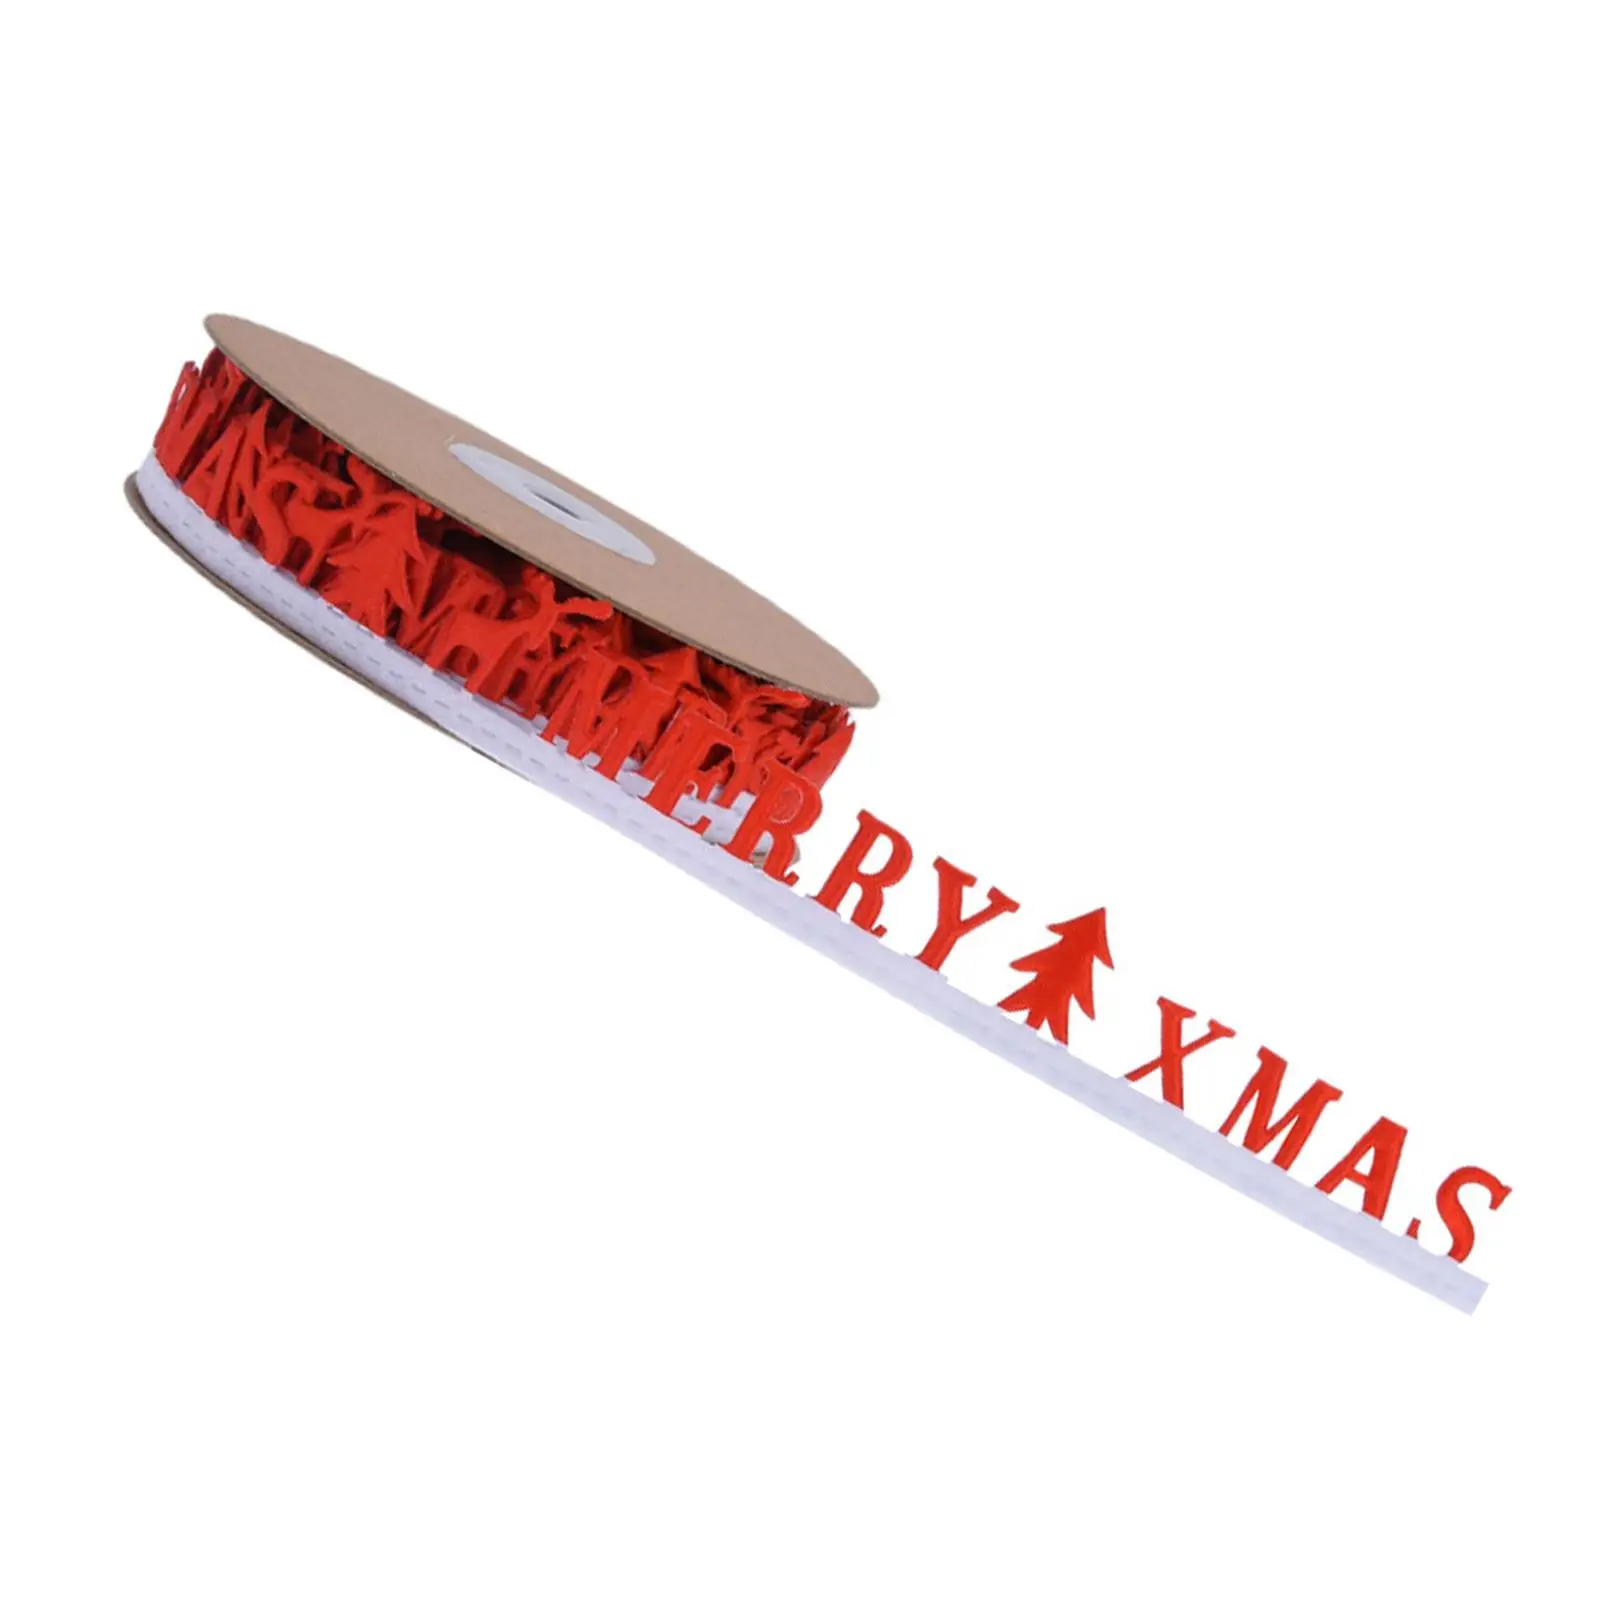 Christmas Ribbon Xmas Ribbons, Decorative Ribbon Gift Wrapping Ribbon 10 Yard for Holiday Sewing Craft Christmas Tree Garland